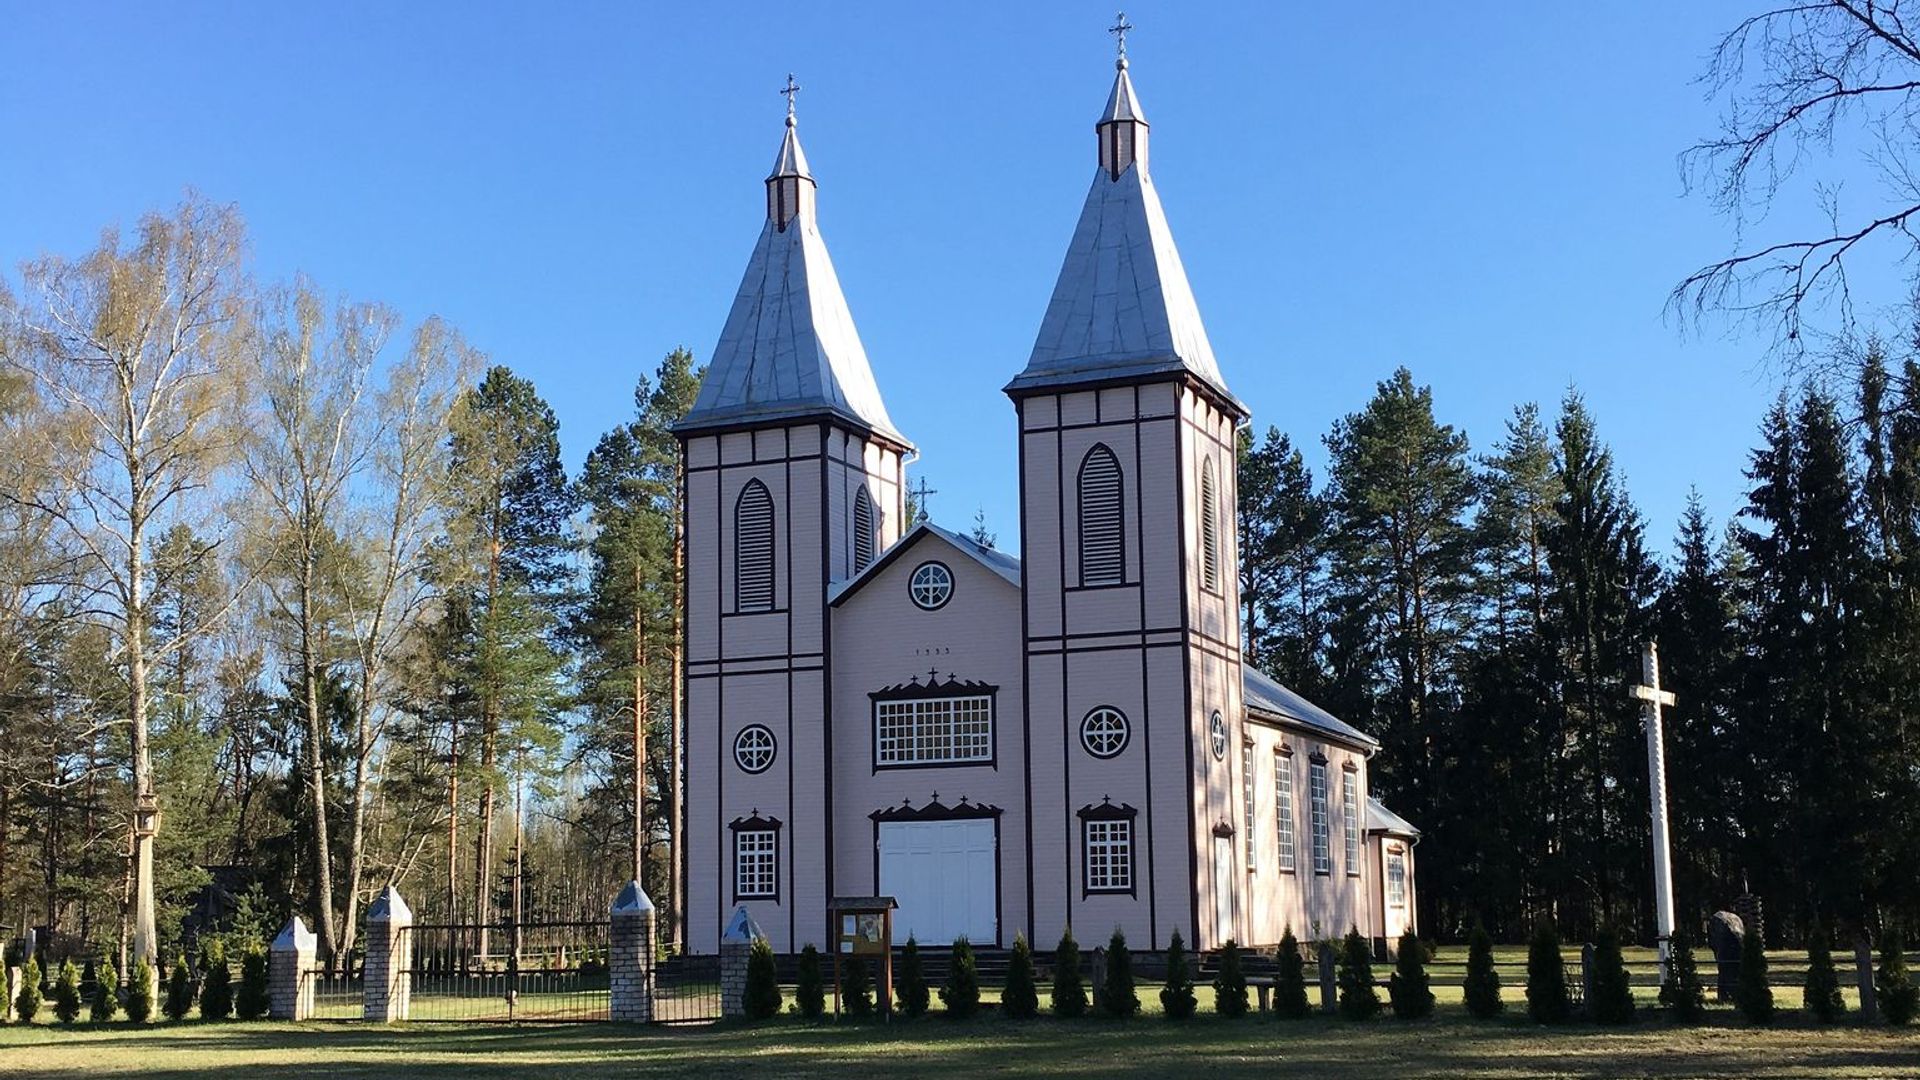 Švedriškės Šv. Jono Krikštytojo bažnyčia